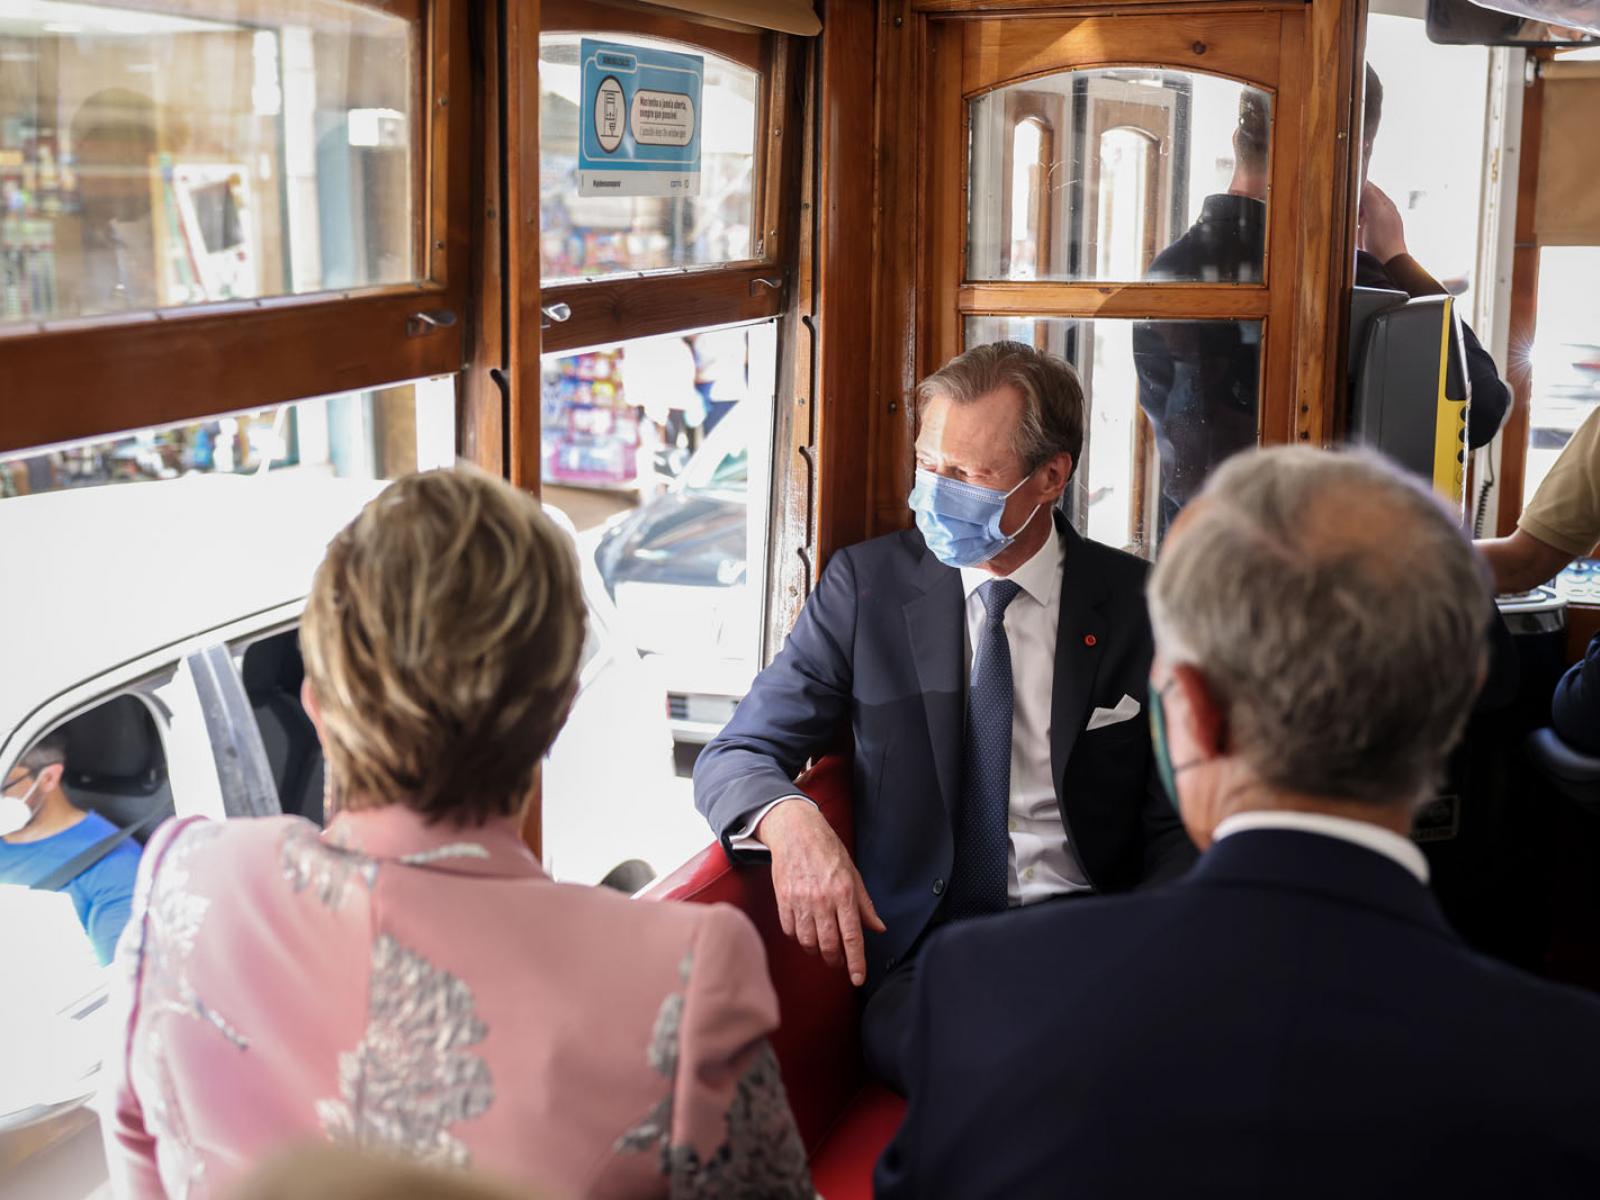 Le Couple grand-ducal voyage dans le tramway